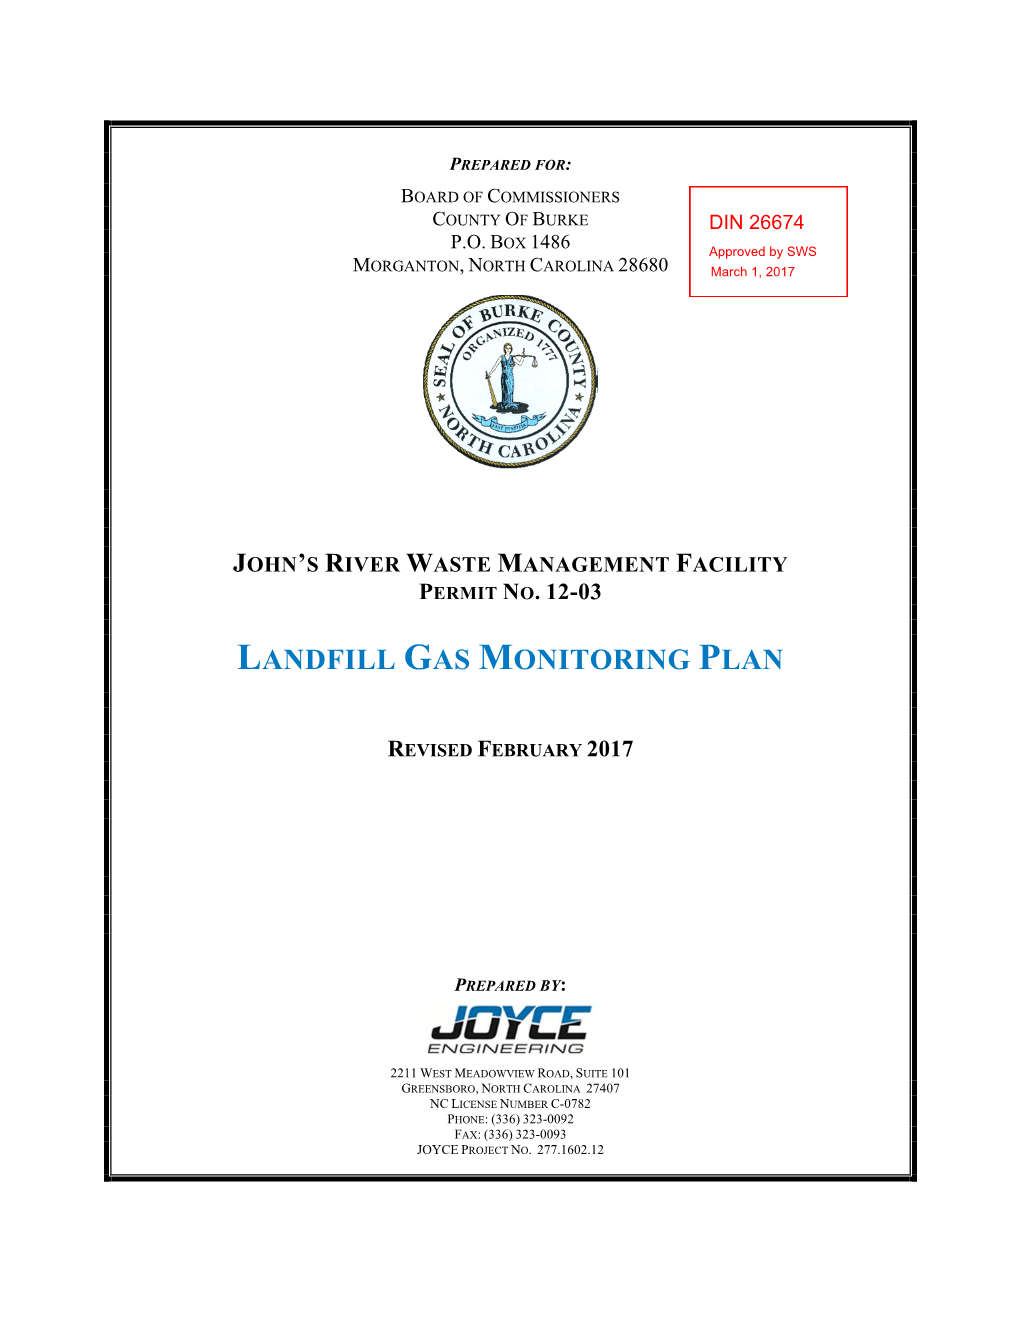 Landfill Gas Monitoring Plan